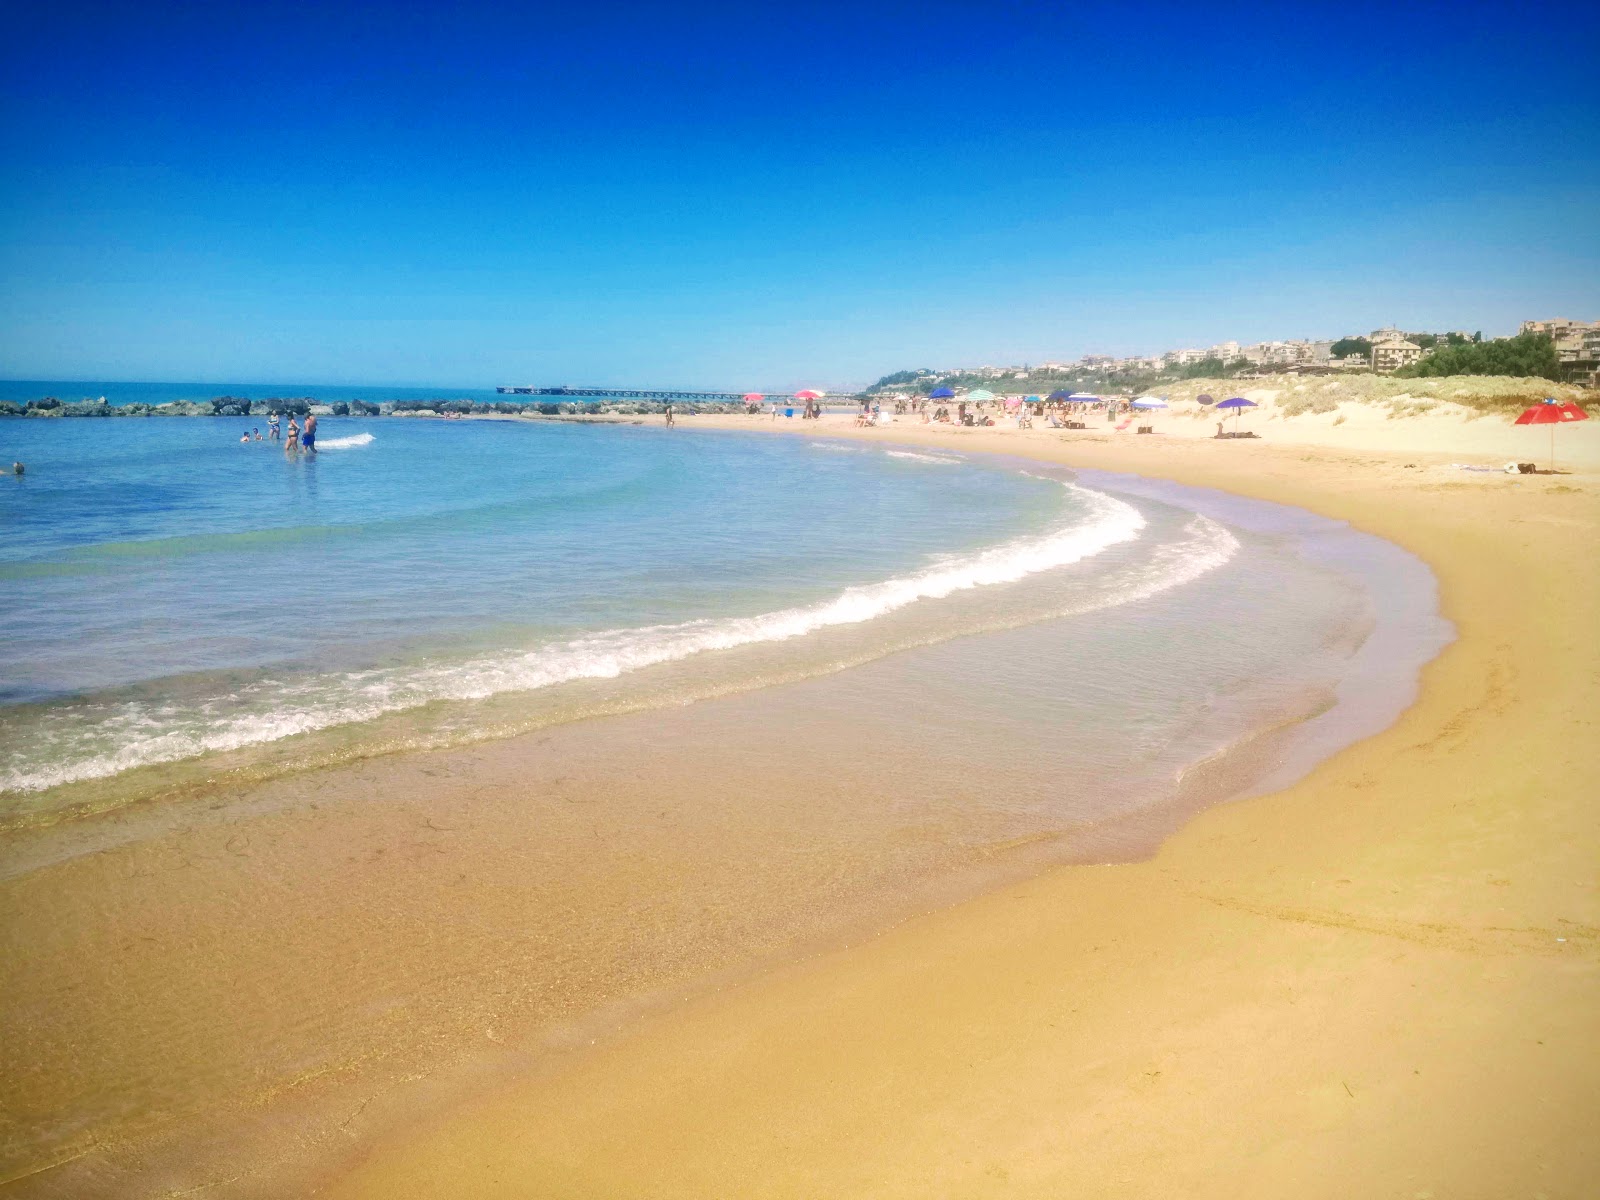 Zdjęcie Spiaggia Di Gela - popularne miejsce wśród znawców relaksu